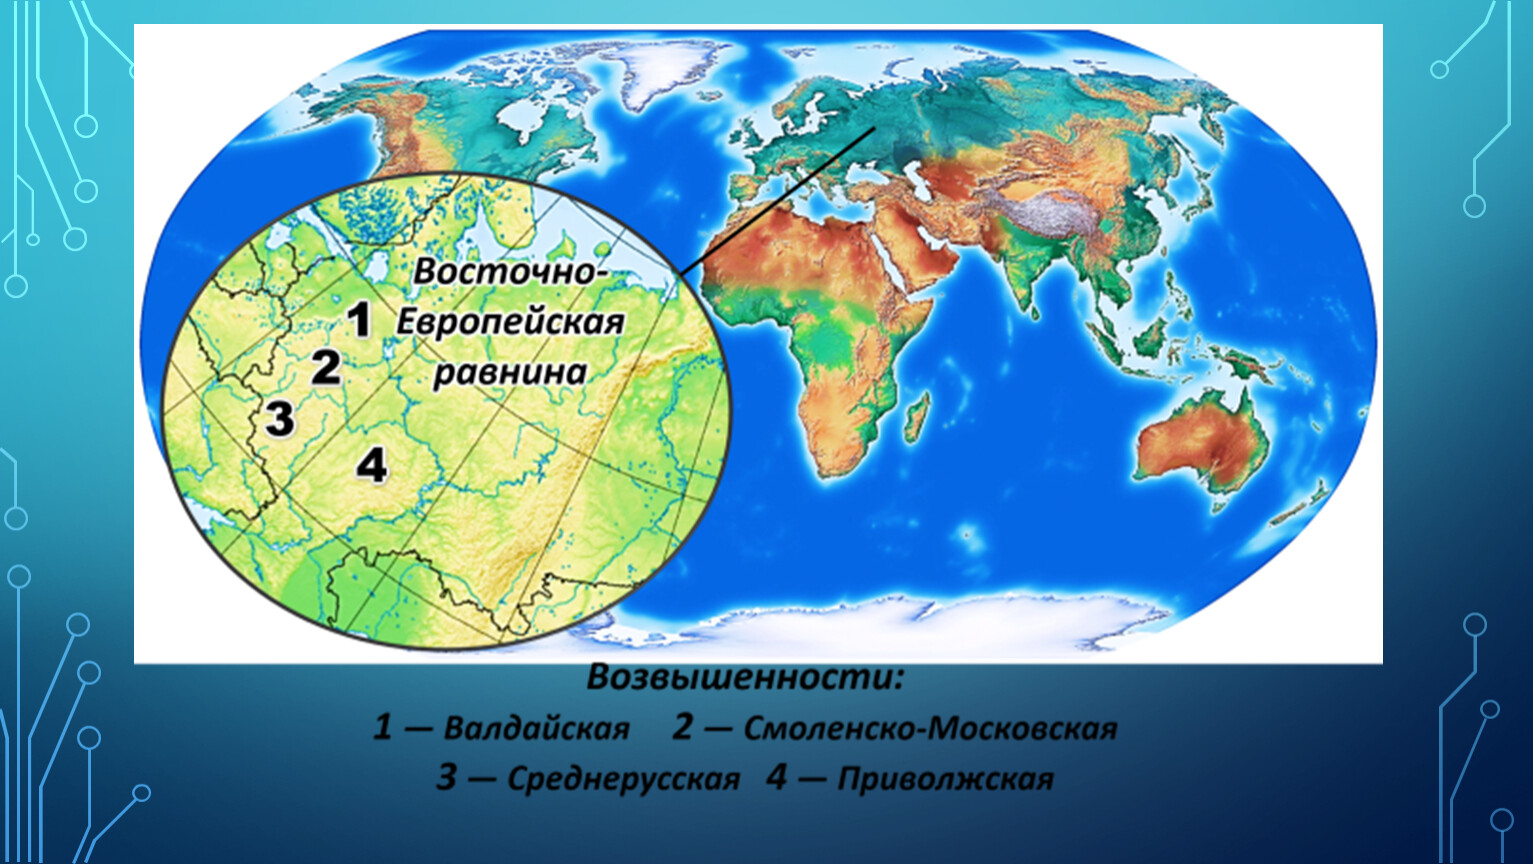 Какой цифрой на карте обозначена Смоленско-Московская возвышенность?